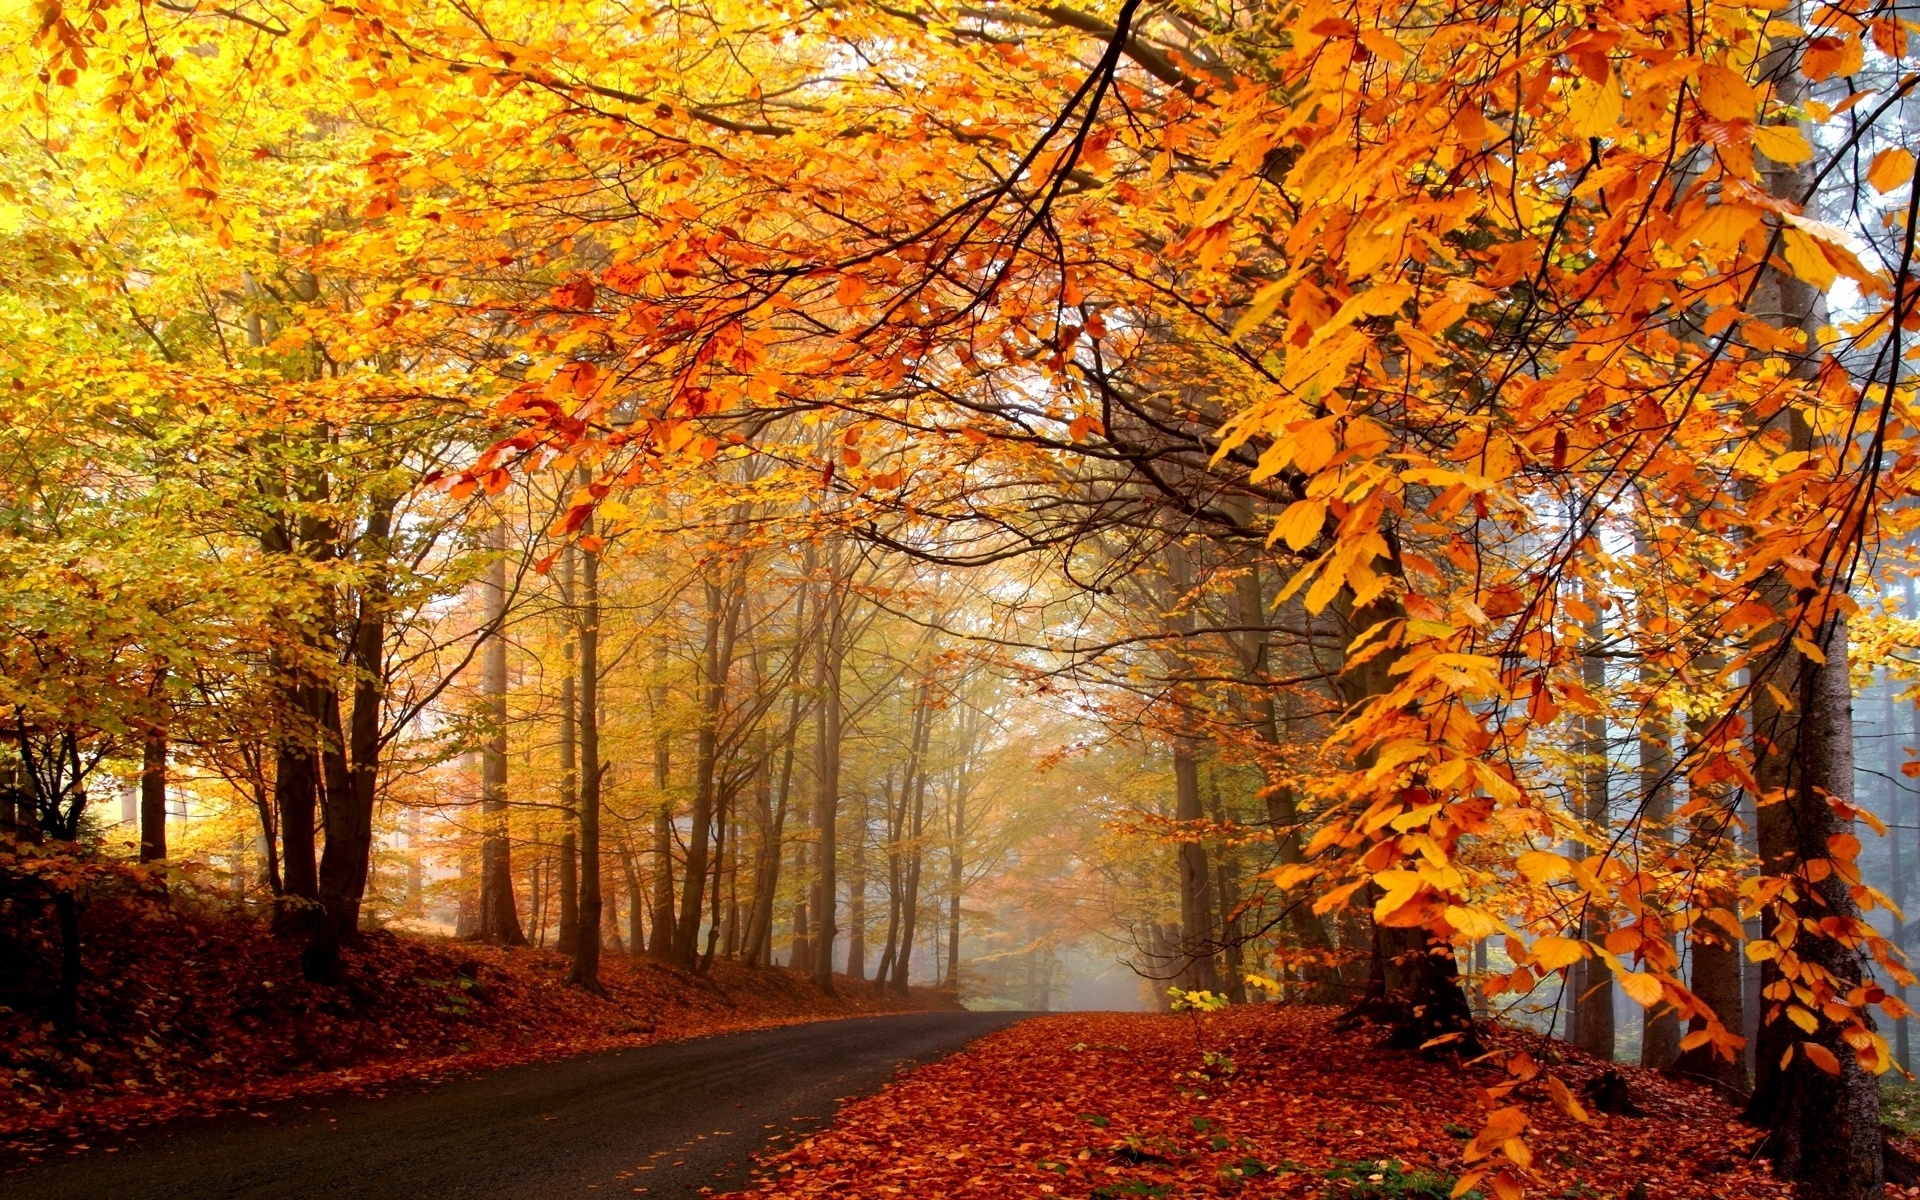 دانلود عکس های زیبا از فصل پاییز
